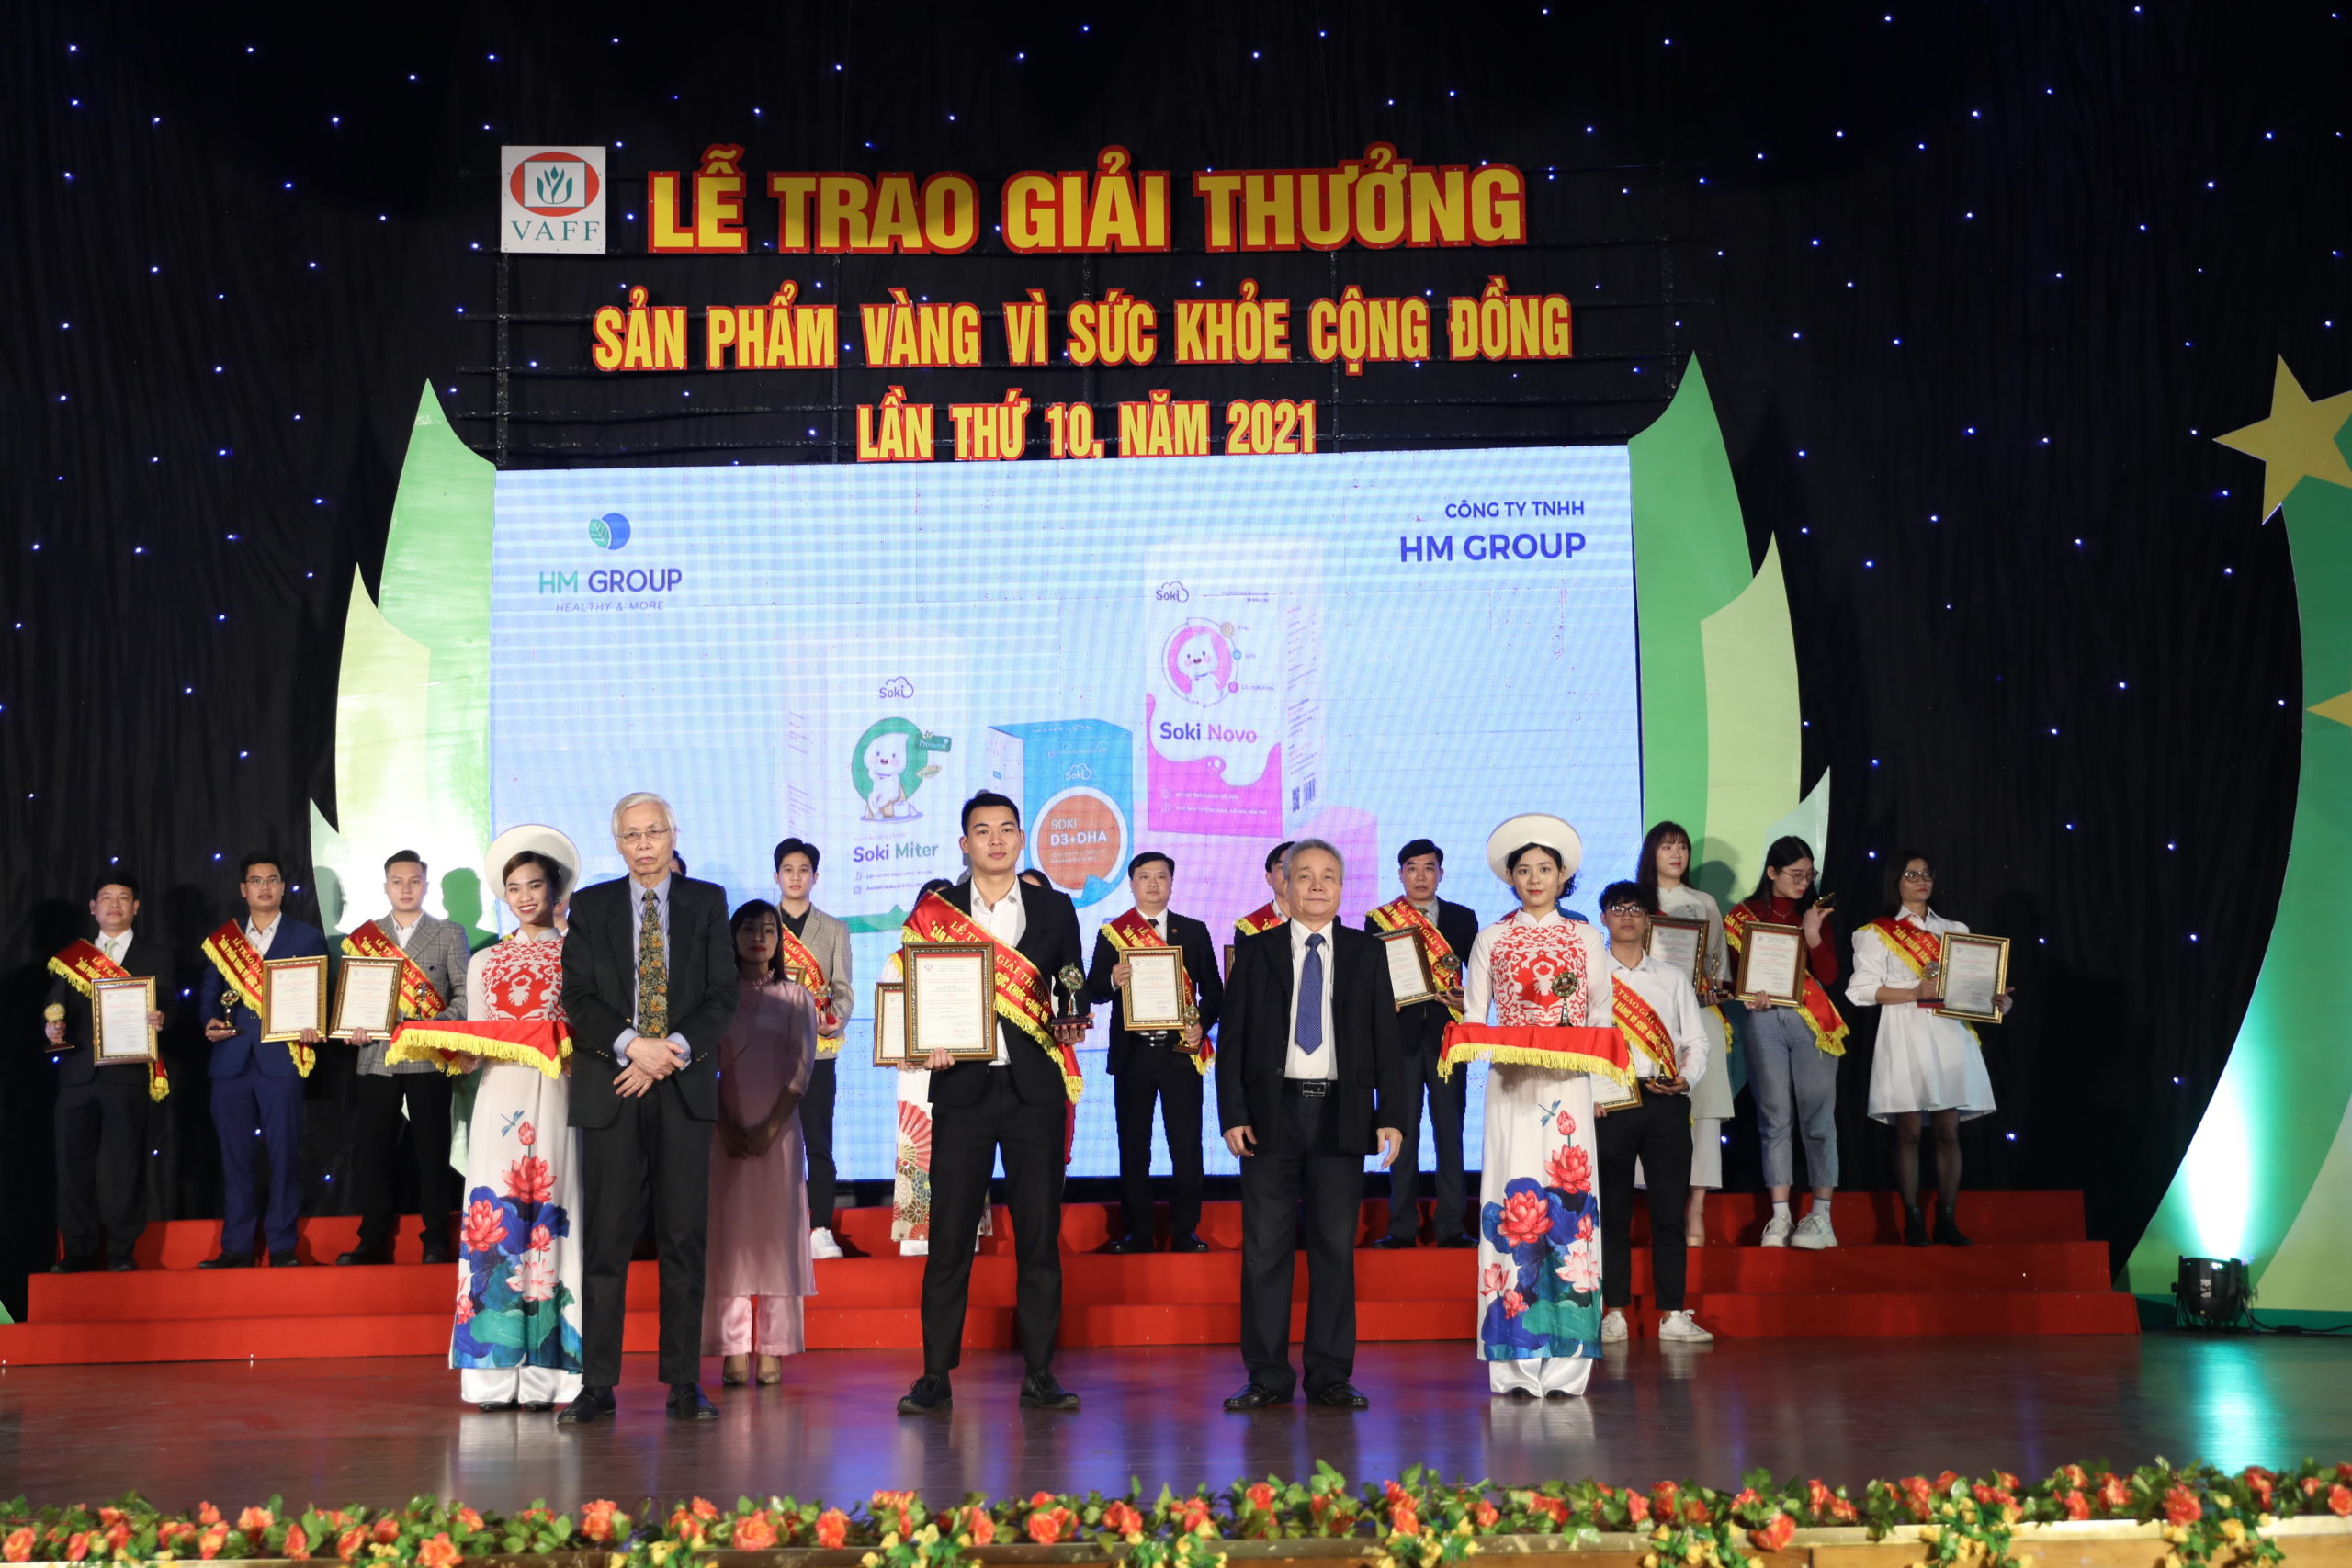 Đại diện HM Group nhận giải thưởng Sản phẩm Vàng vì Sức khoẻ cộng đồng cho 3 sản phẩm Soki Novo, Soki Miter, Soki D3 DHA